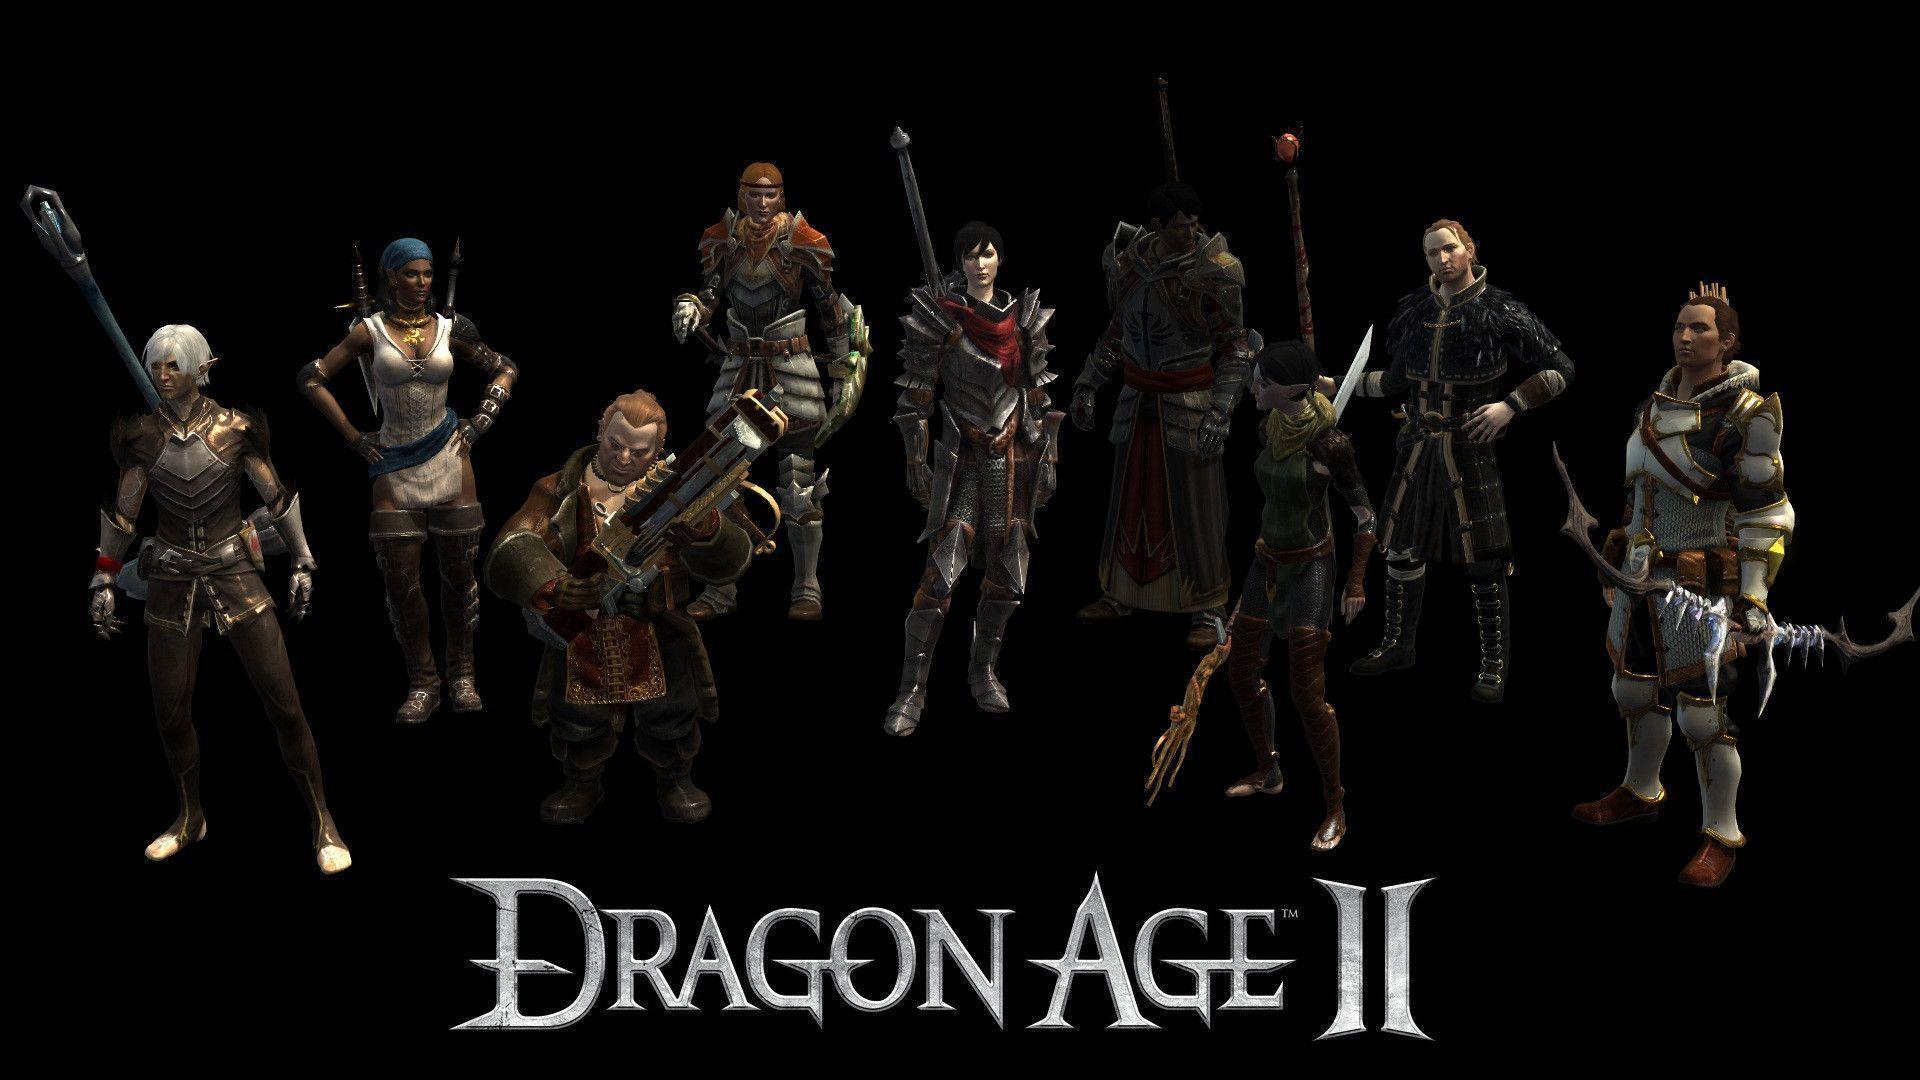 Dragon age 2 cover wallpaper 4